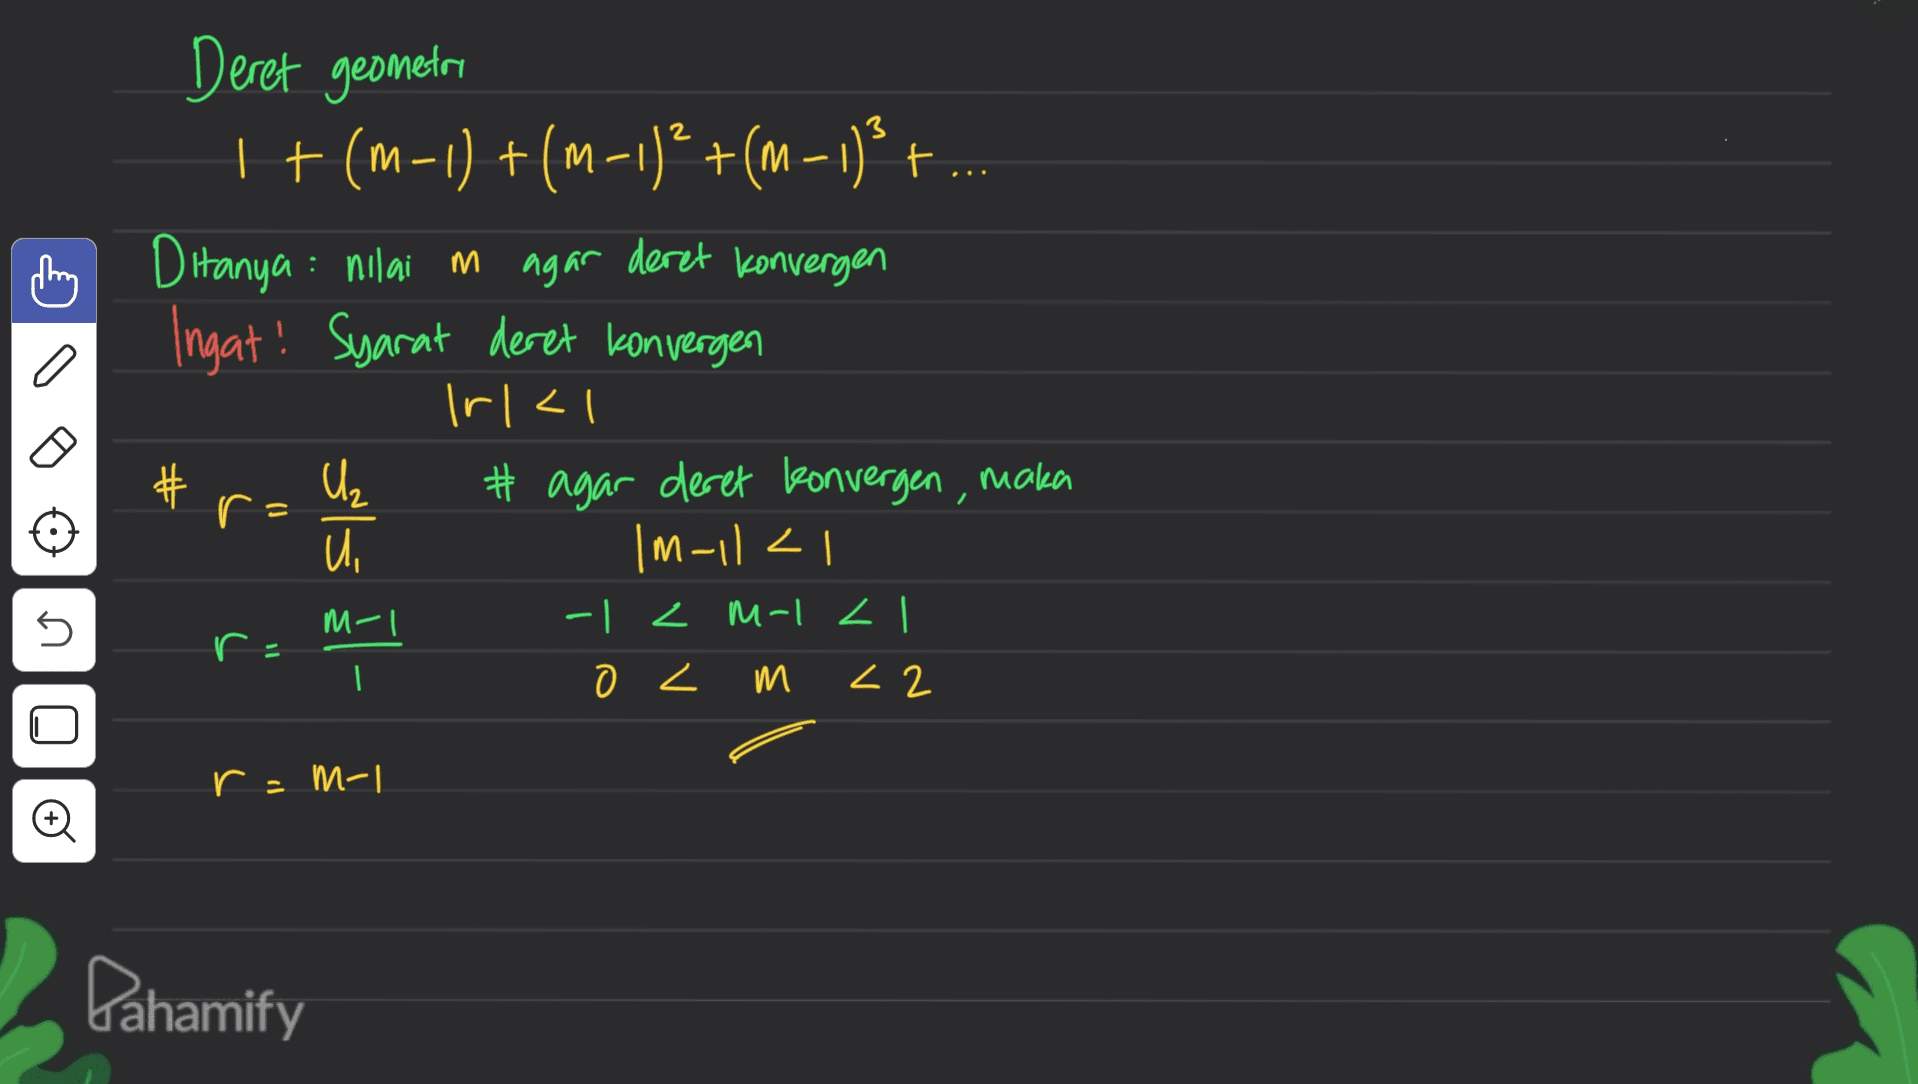 Deret geometri | +(m-1) +(M-1) +(-1)3 + Ditanya : nilai in agar deret konvergen Ingat! Syarat deret konvergen Irlal # agar deret konvergen, maka U |M-112 C # r 55 - 5 M-I r = | 7 |-hi 7 - z7 m 7 e T-W -1 Dahamify 